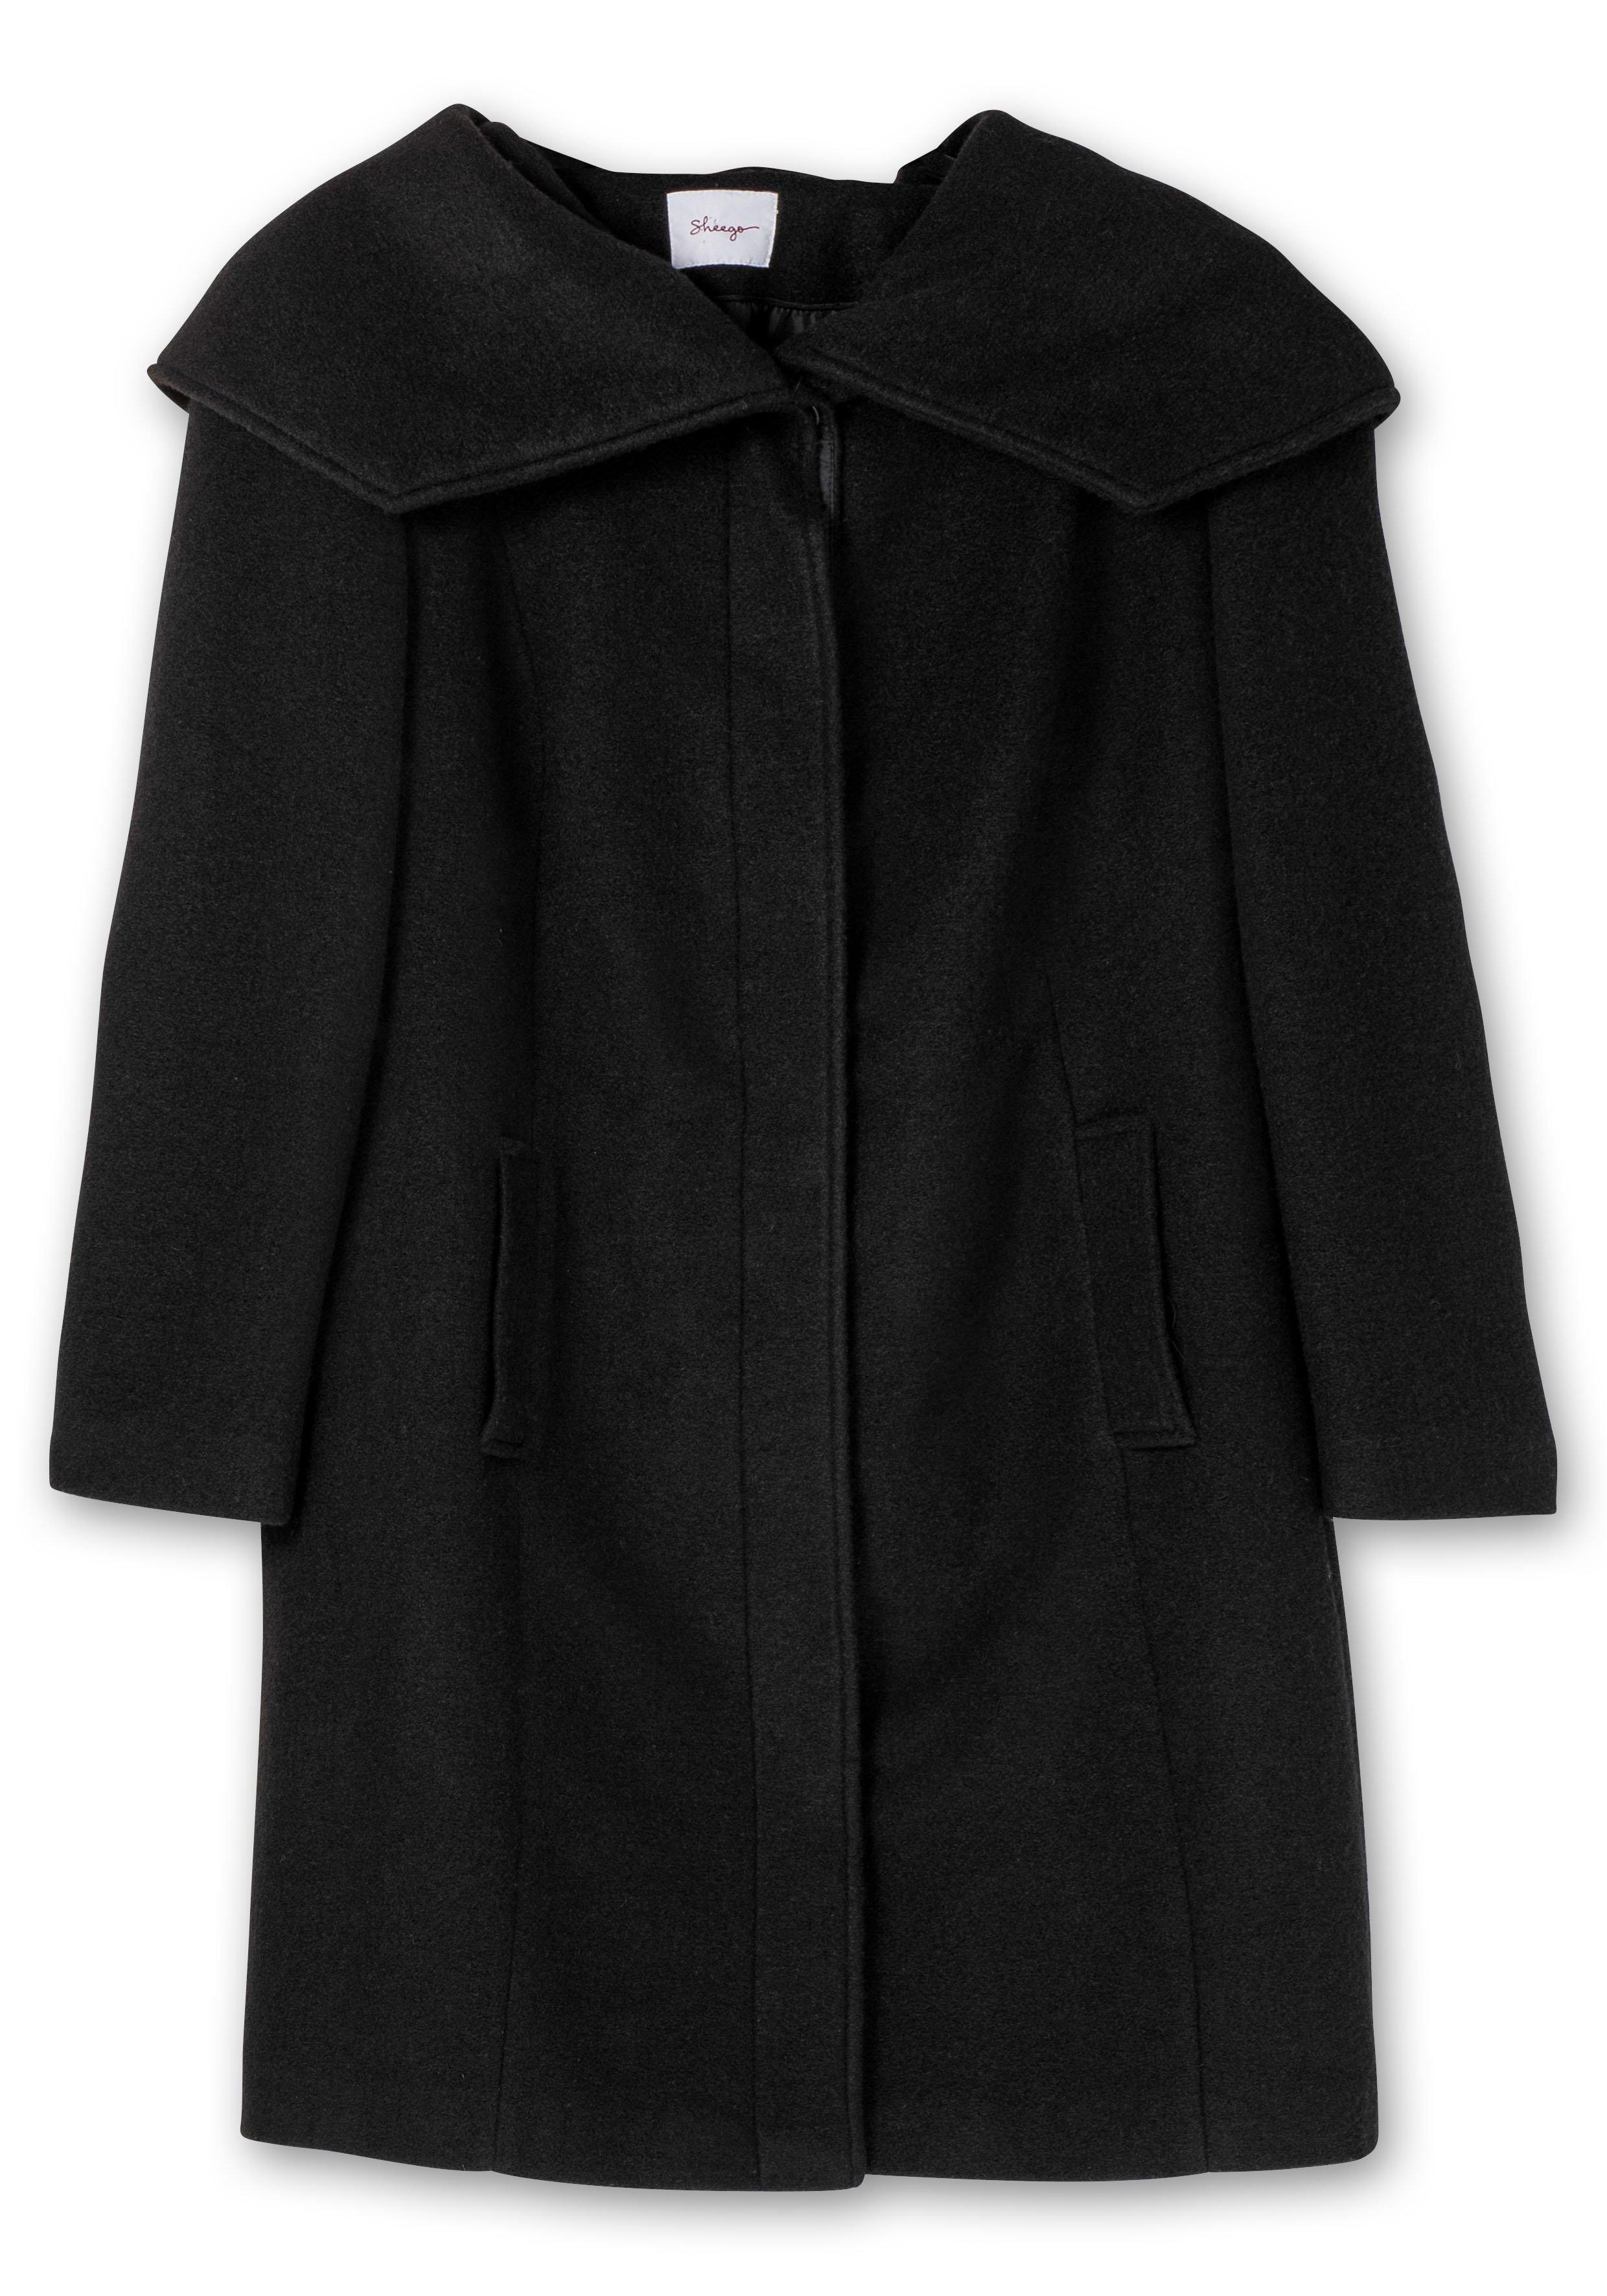 Taillierter Mantel mit großem Kragen - Wollanteil und sheego schwarz 